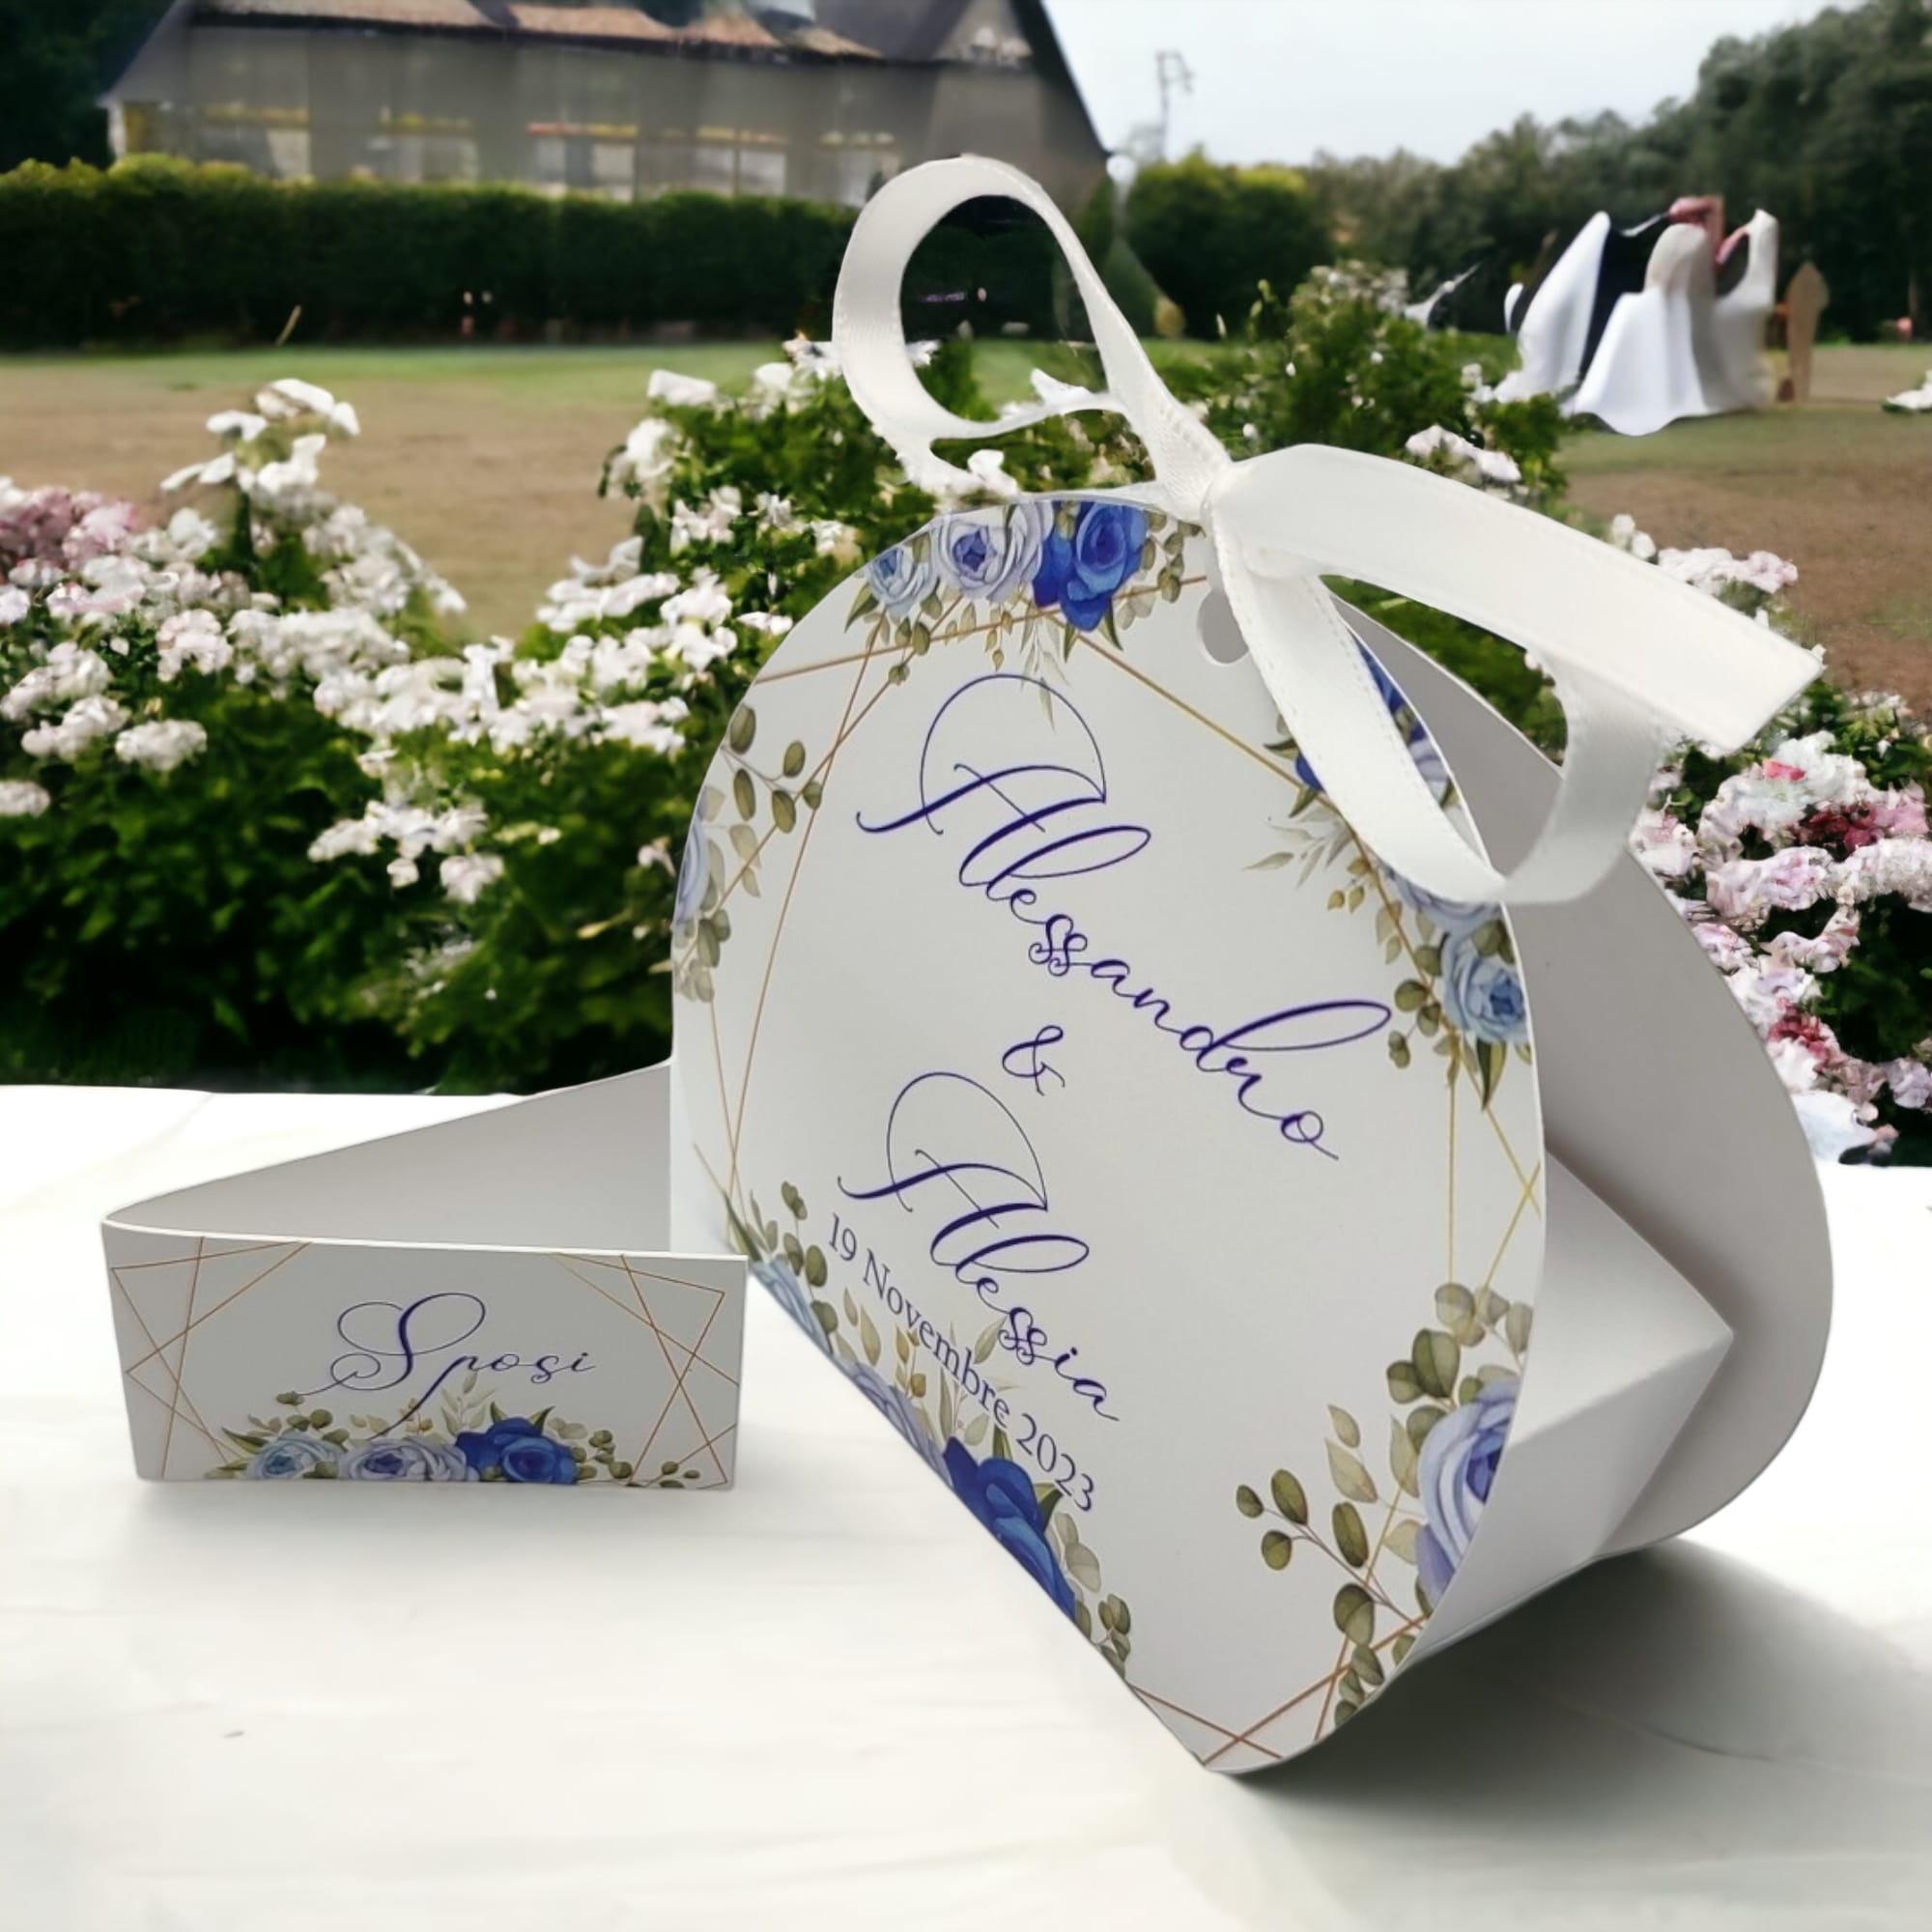 Le Gioie Scatolina Personalizzata Promessa di Matrimonio con confetti 4  Scomparti 10x10 cm